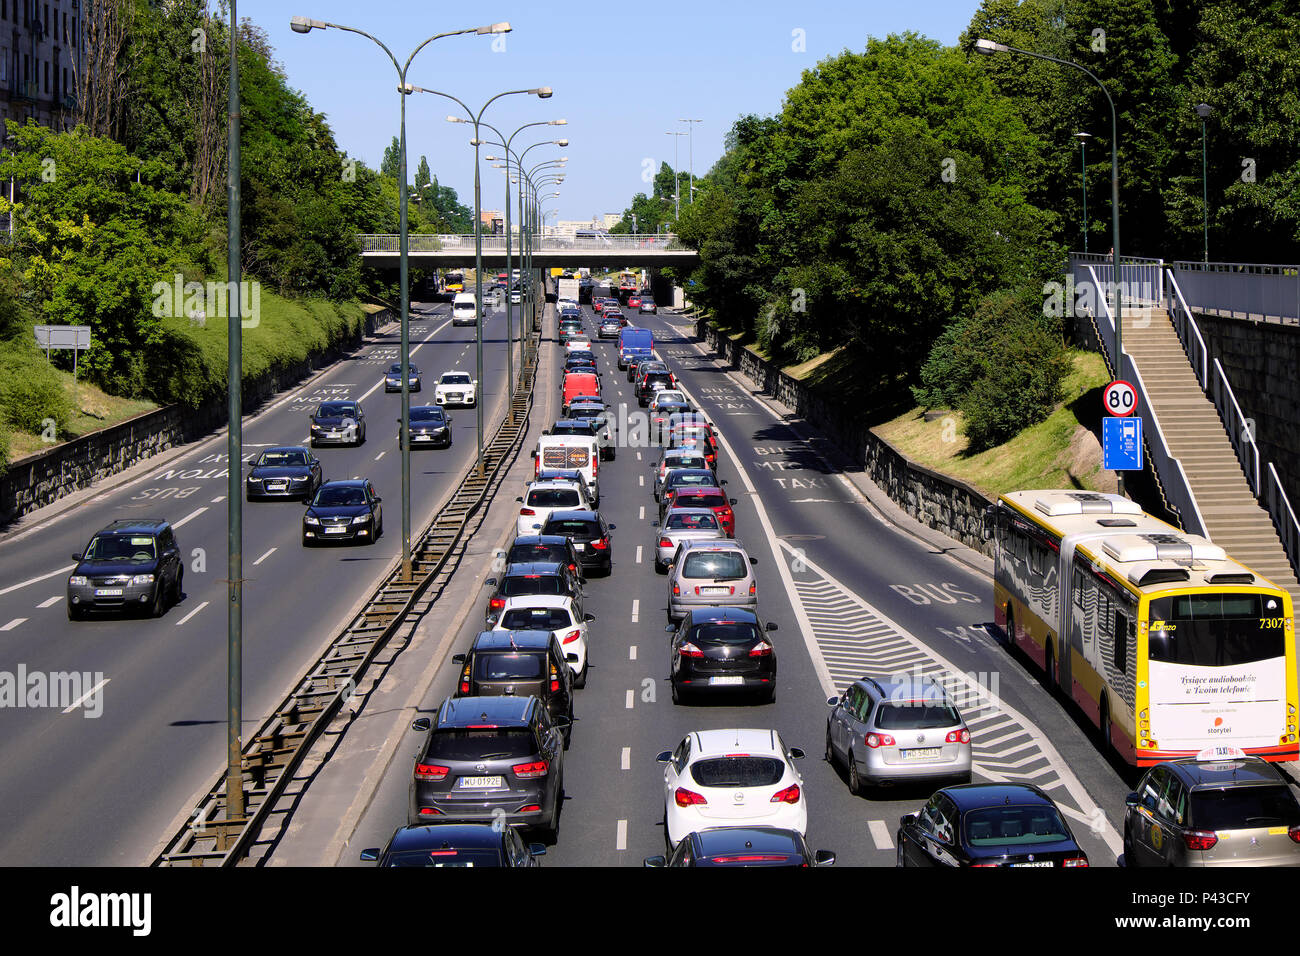 Varsavia, Mazovia / Polonia - 2018/06/07: il traffico pesante e gli ingorghi di traffico a Trasa Lazienkowska boulevard, arteria che collega la parte occidentale e quella orientale del Foto Stock